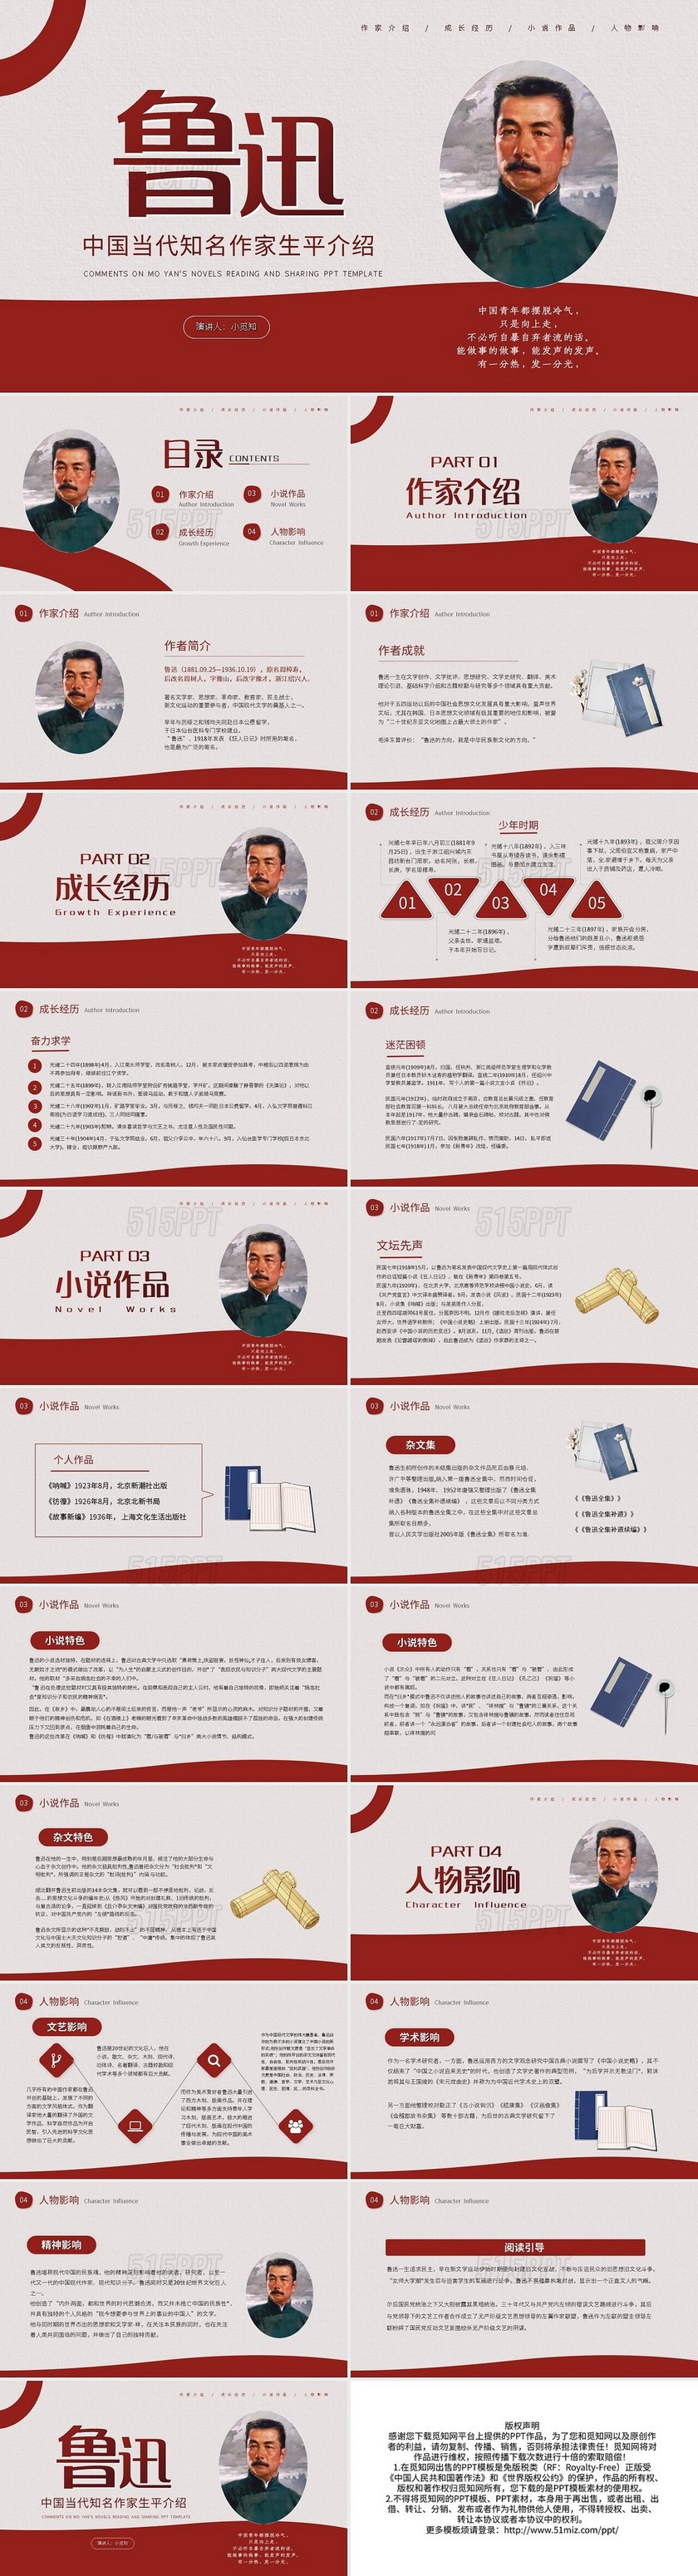 红色简约鲁迅中国当代知名作家生平介绍PPT模板宣传PPT动态